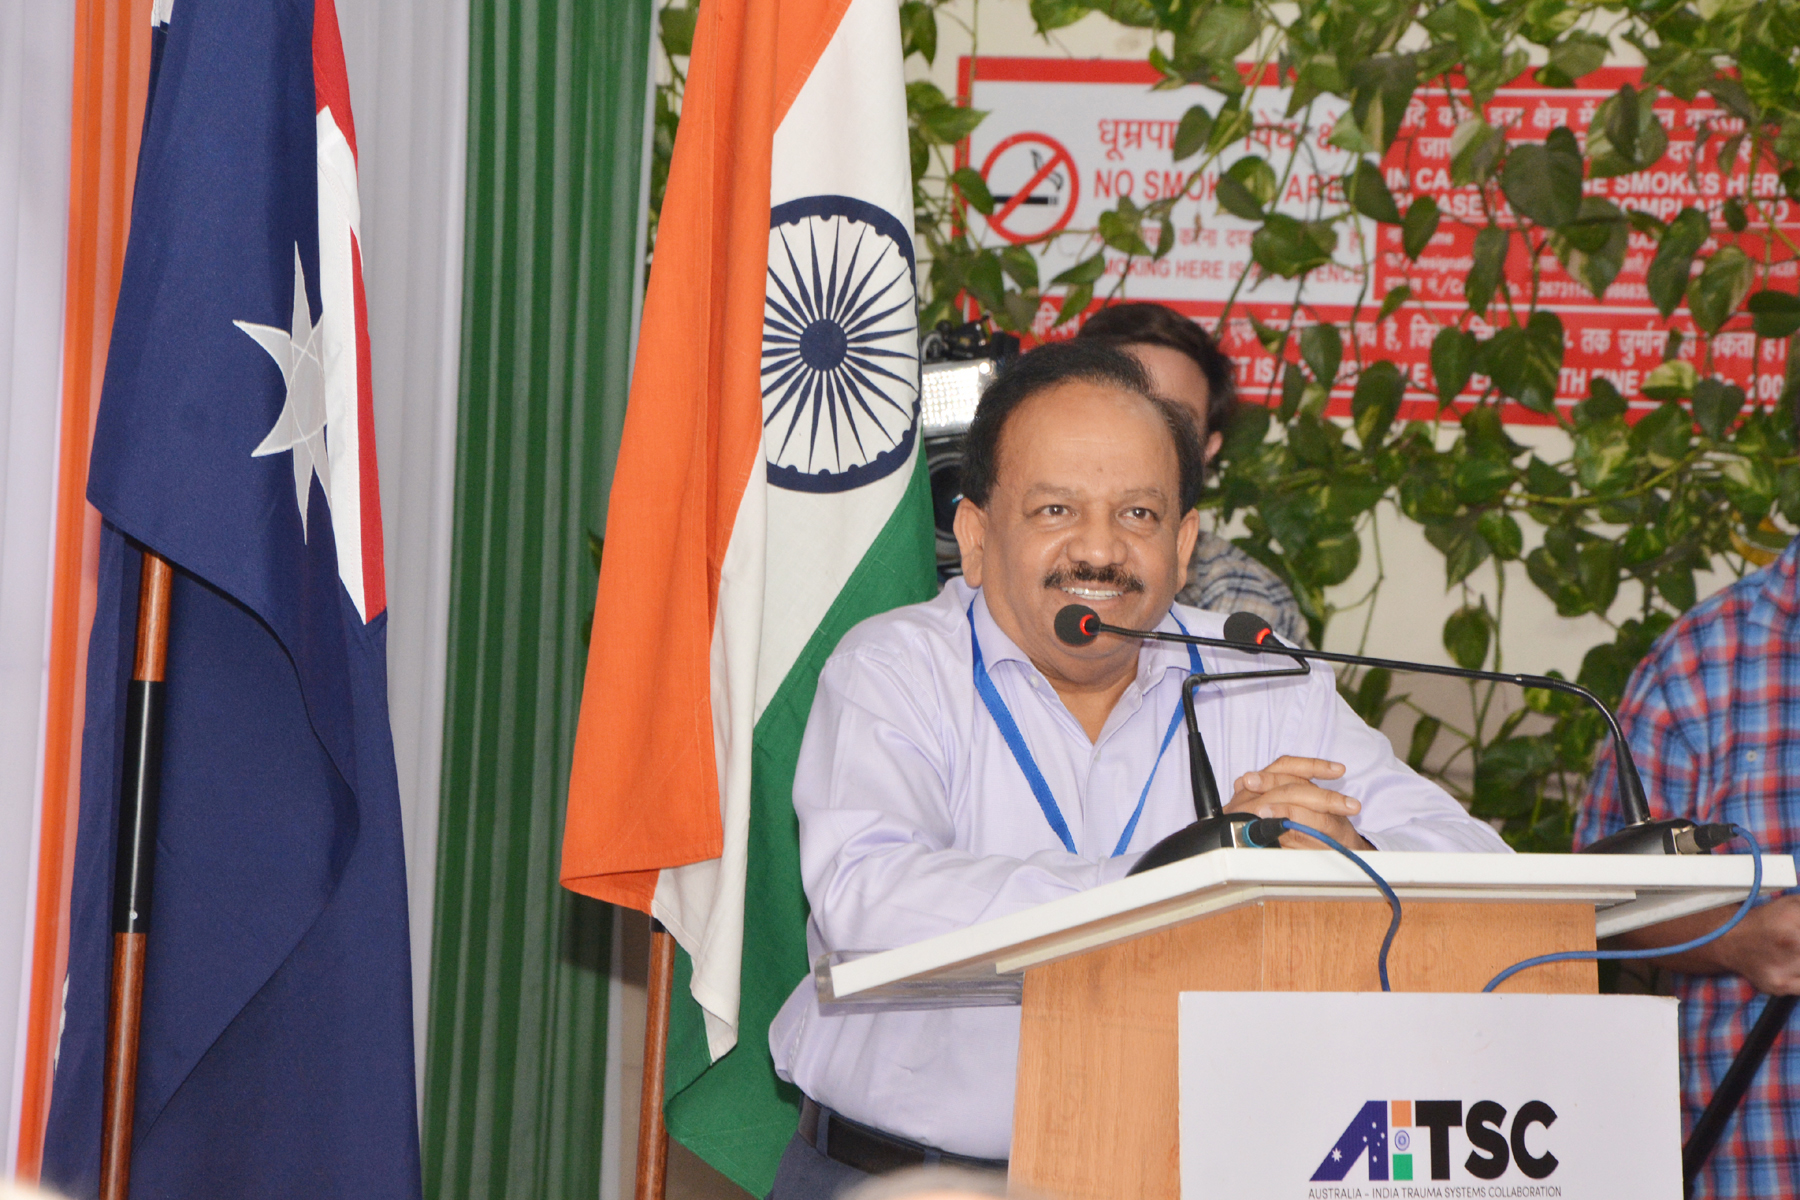 Dr. Harsh Vardhan addressing the function during the visit of the Australian P M, Tony Abbott